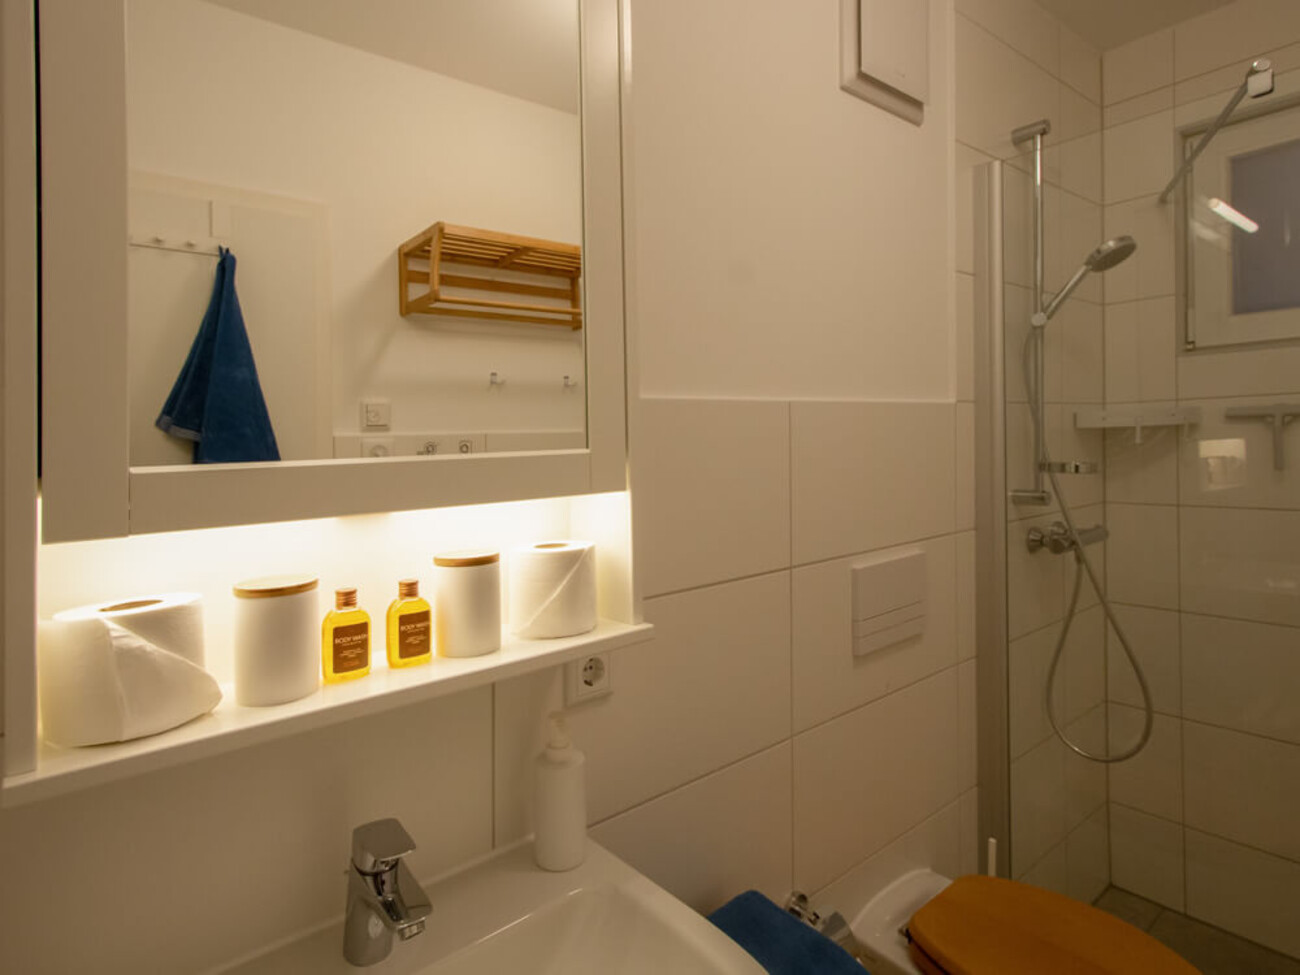 Wohnung 3: Bad mit Spiegel und Ablage.